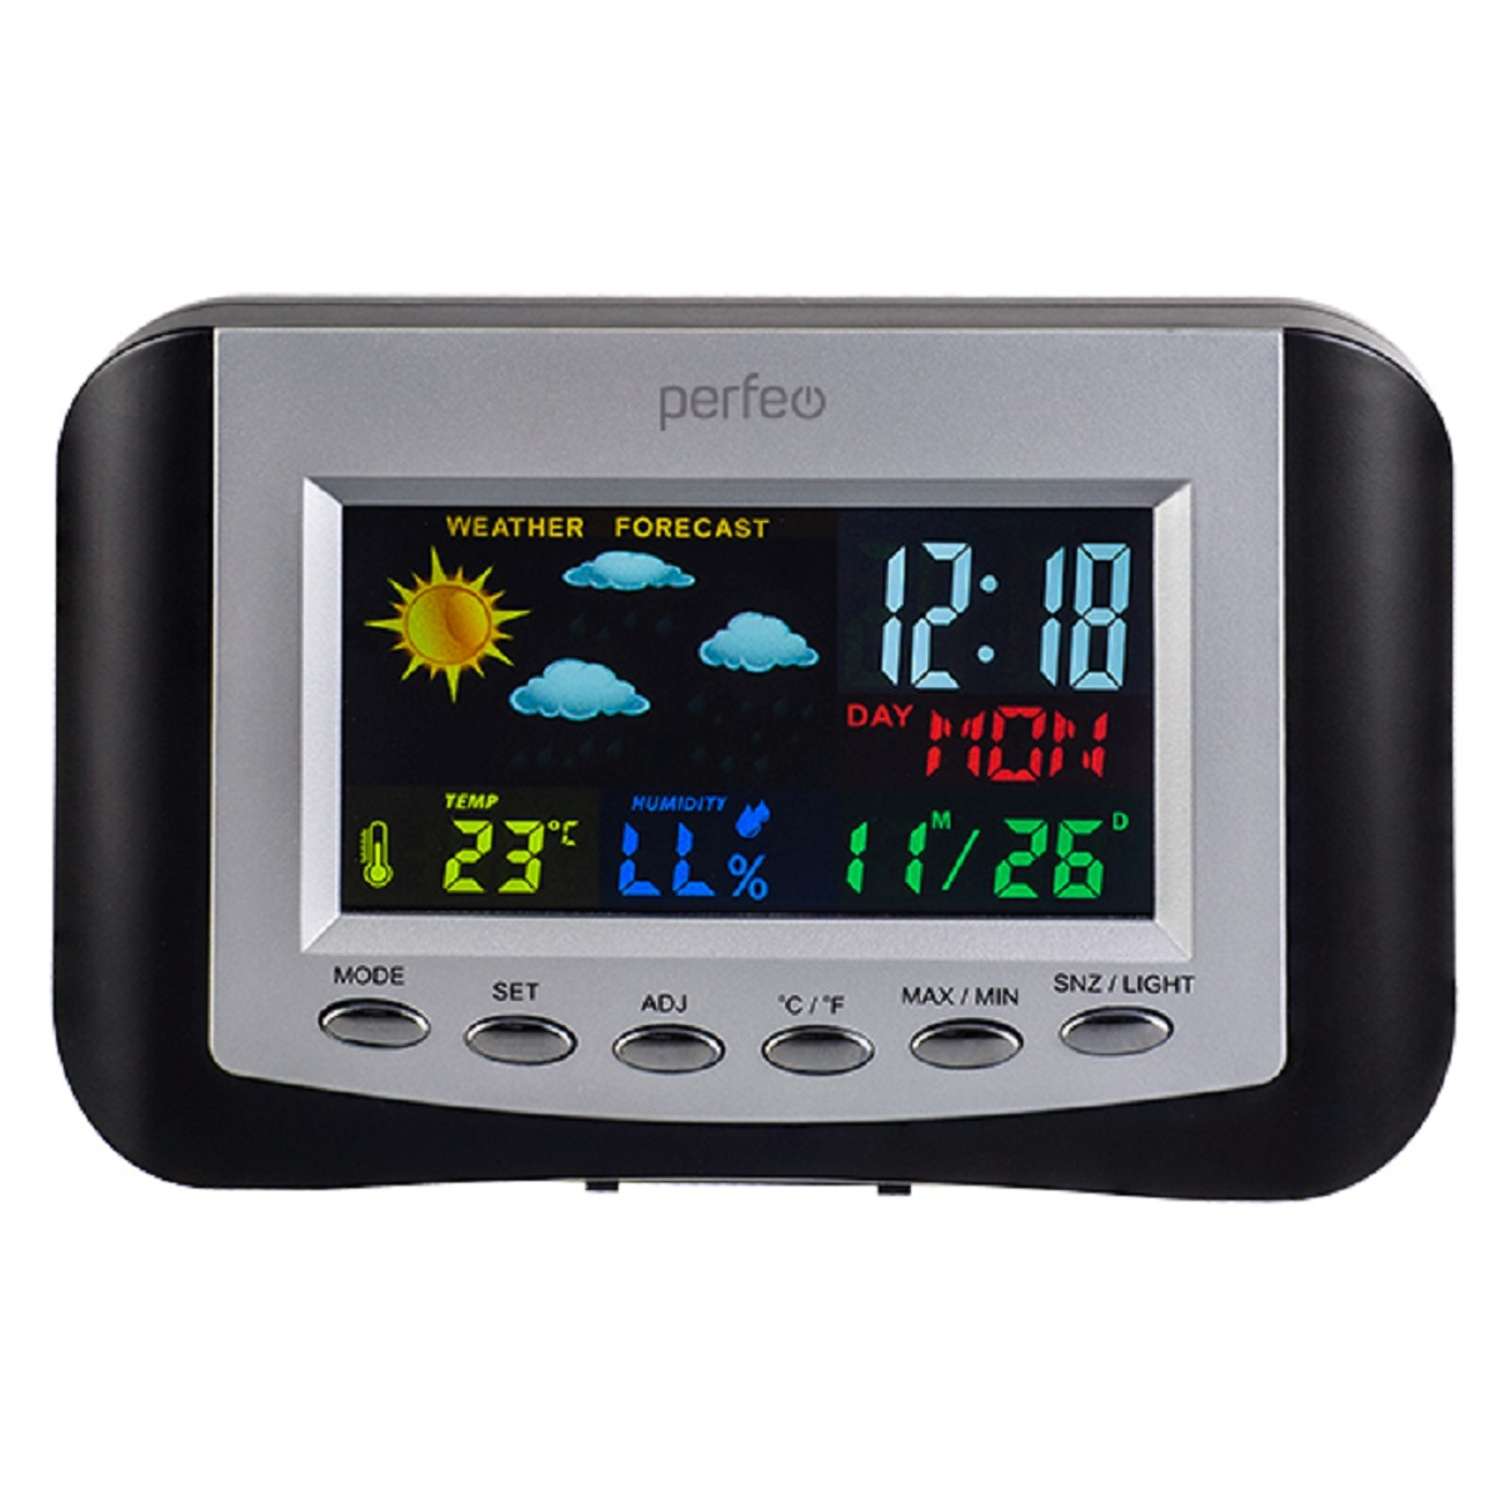 Часы-метеостанция Perfeo Сolor PF-S3332CS цветной экран время температура влажность дата - фото 2